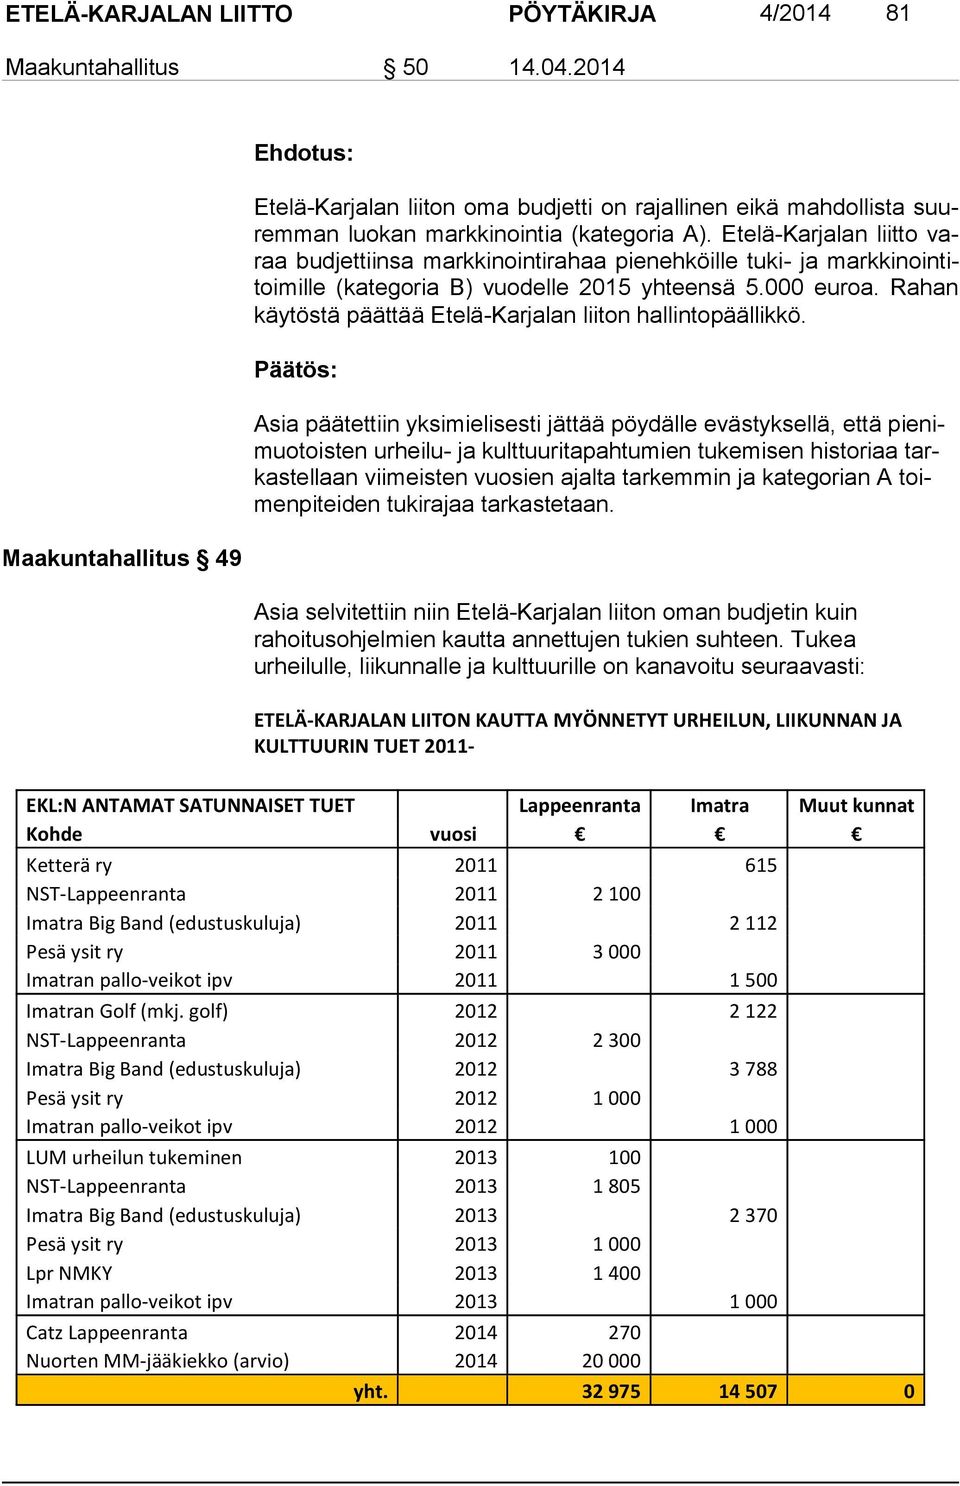 Etelä-Karjalan liitto varaa budjettiinsa markkinointirahaa pie neh köil le tuki- ja mark ki noin titoi mil le (kategoria B) vuodelle 2015 yh teen sä 5.000 euroa.